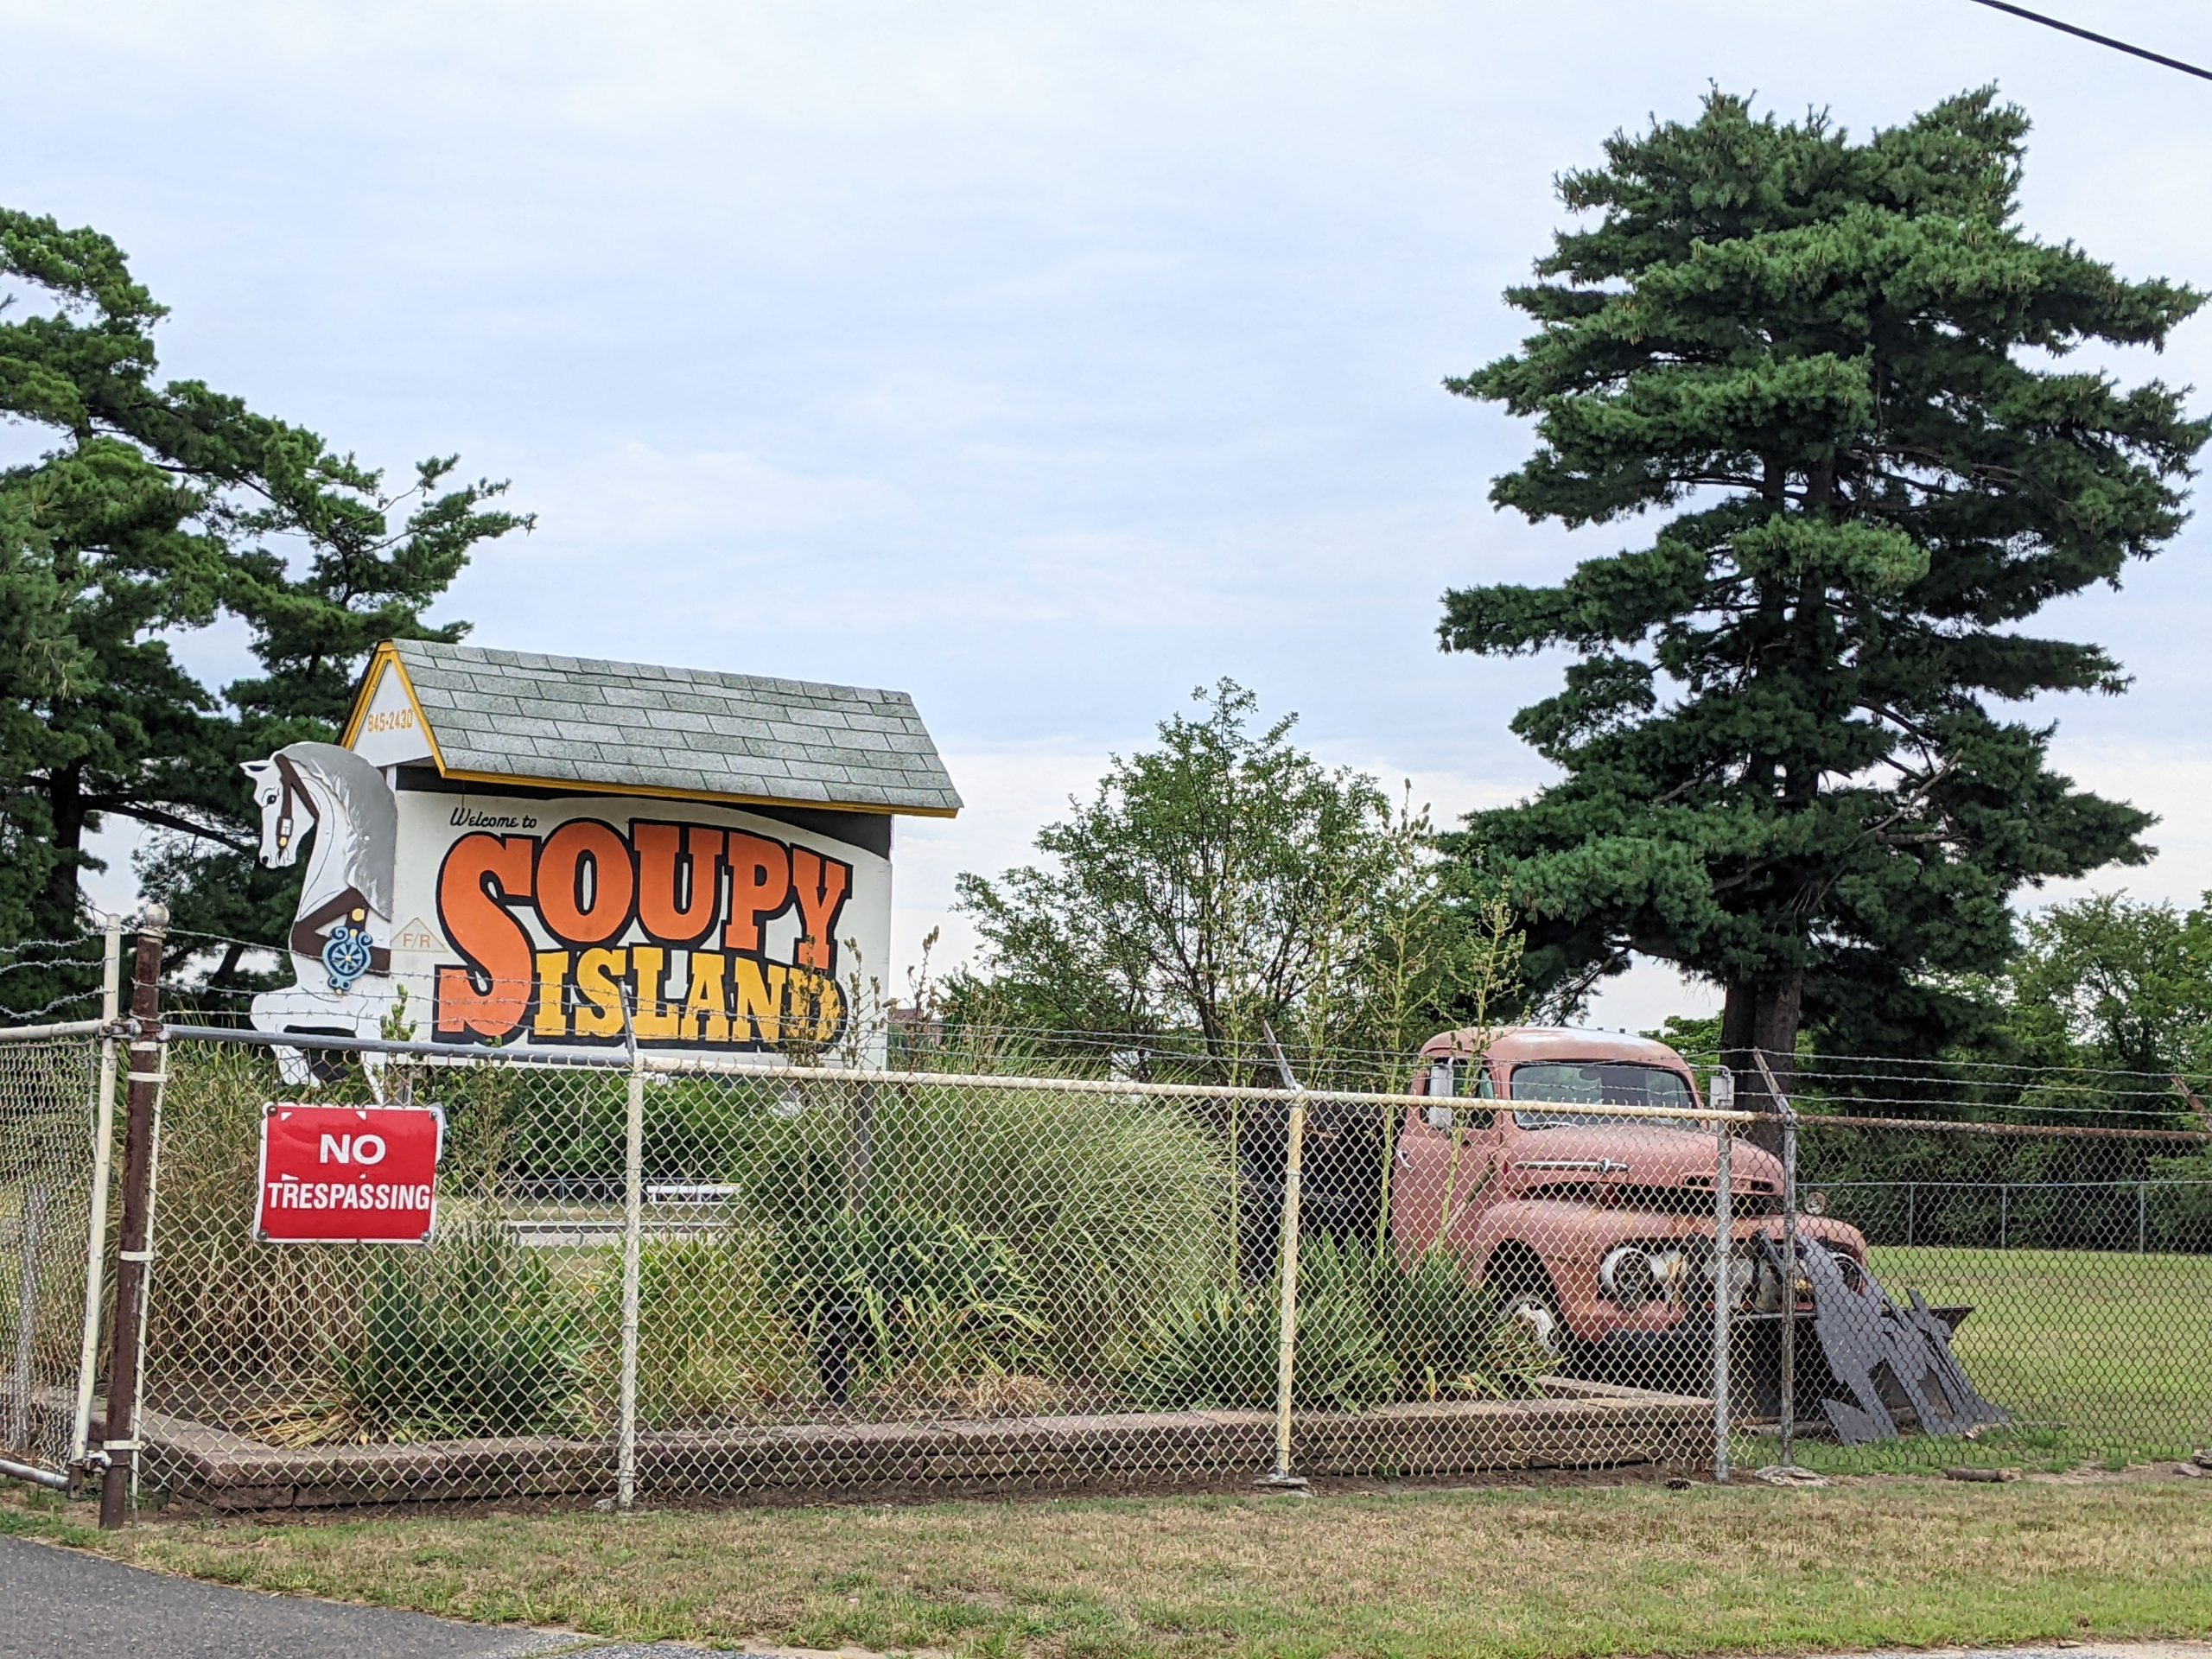 Soupy Island in Deptford NJ - Soupy Island sign